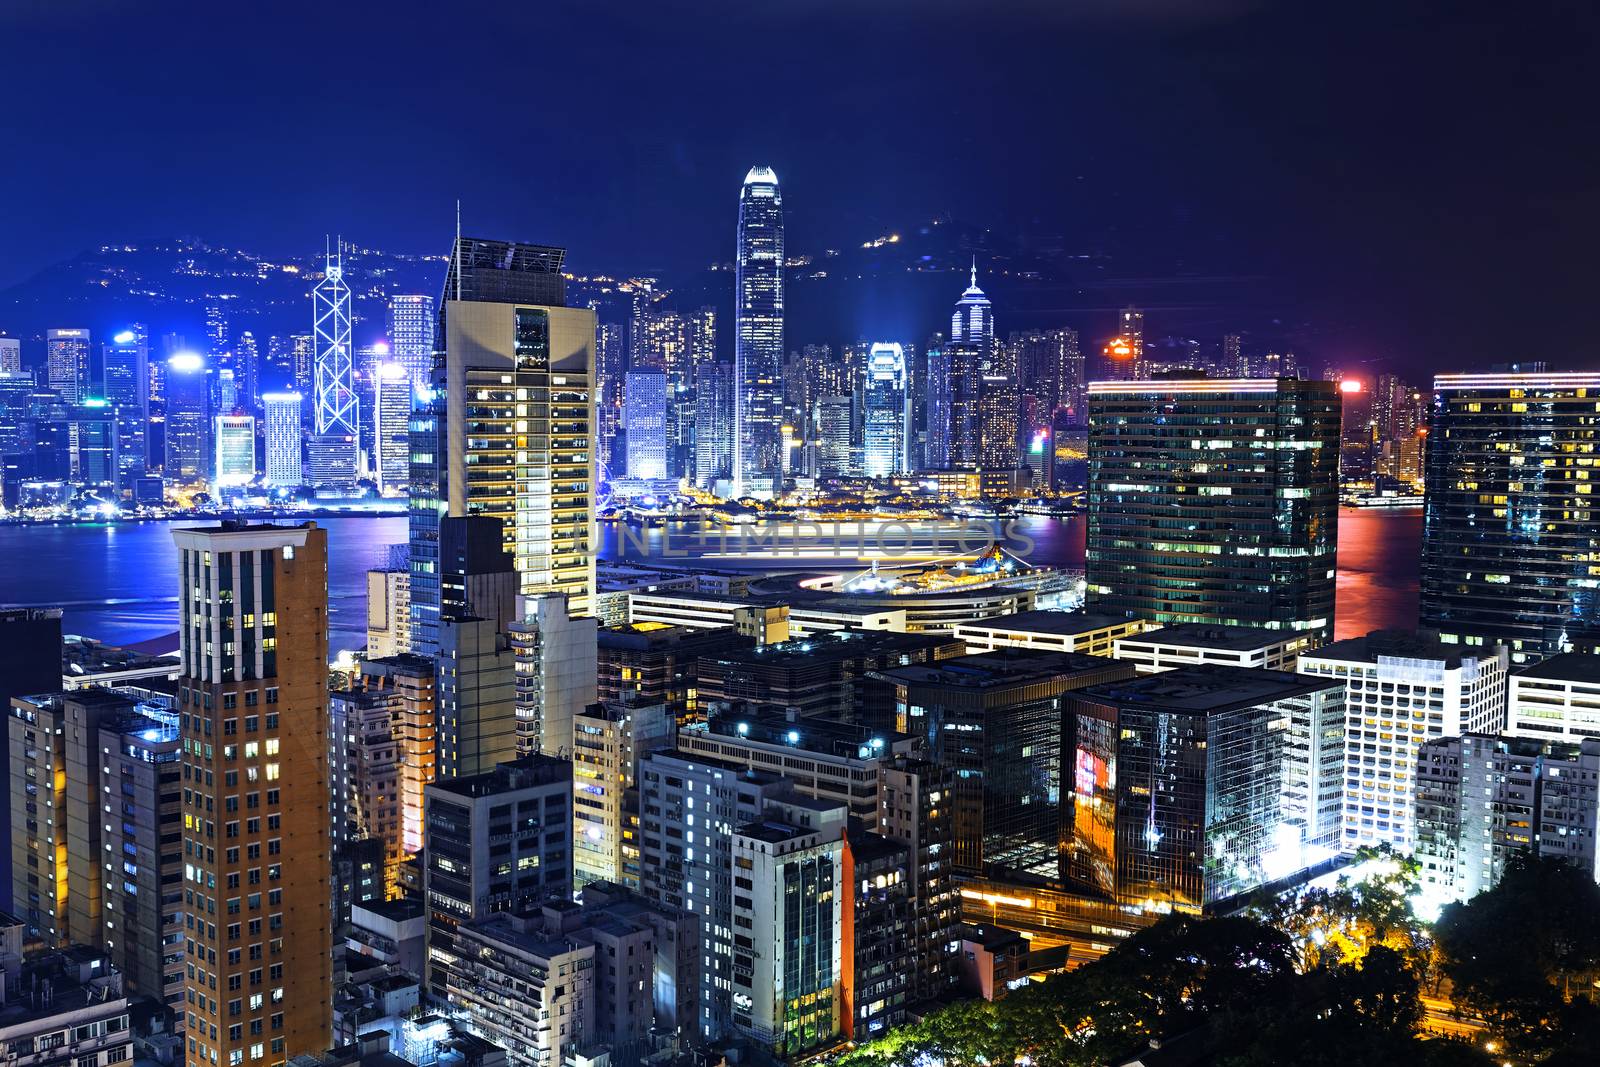 Hong Kong City skylines at Night